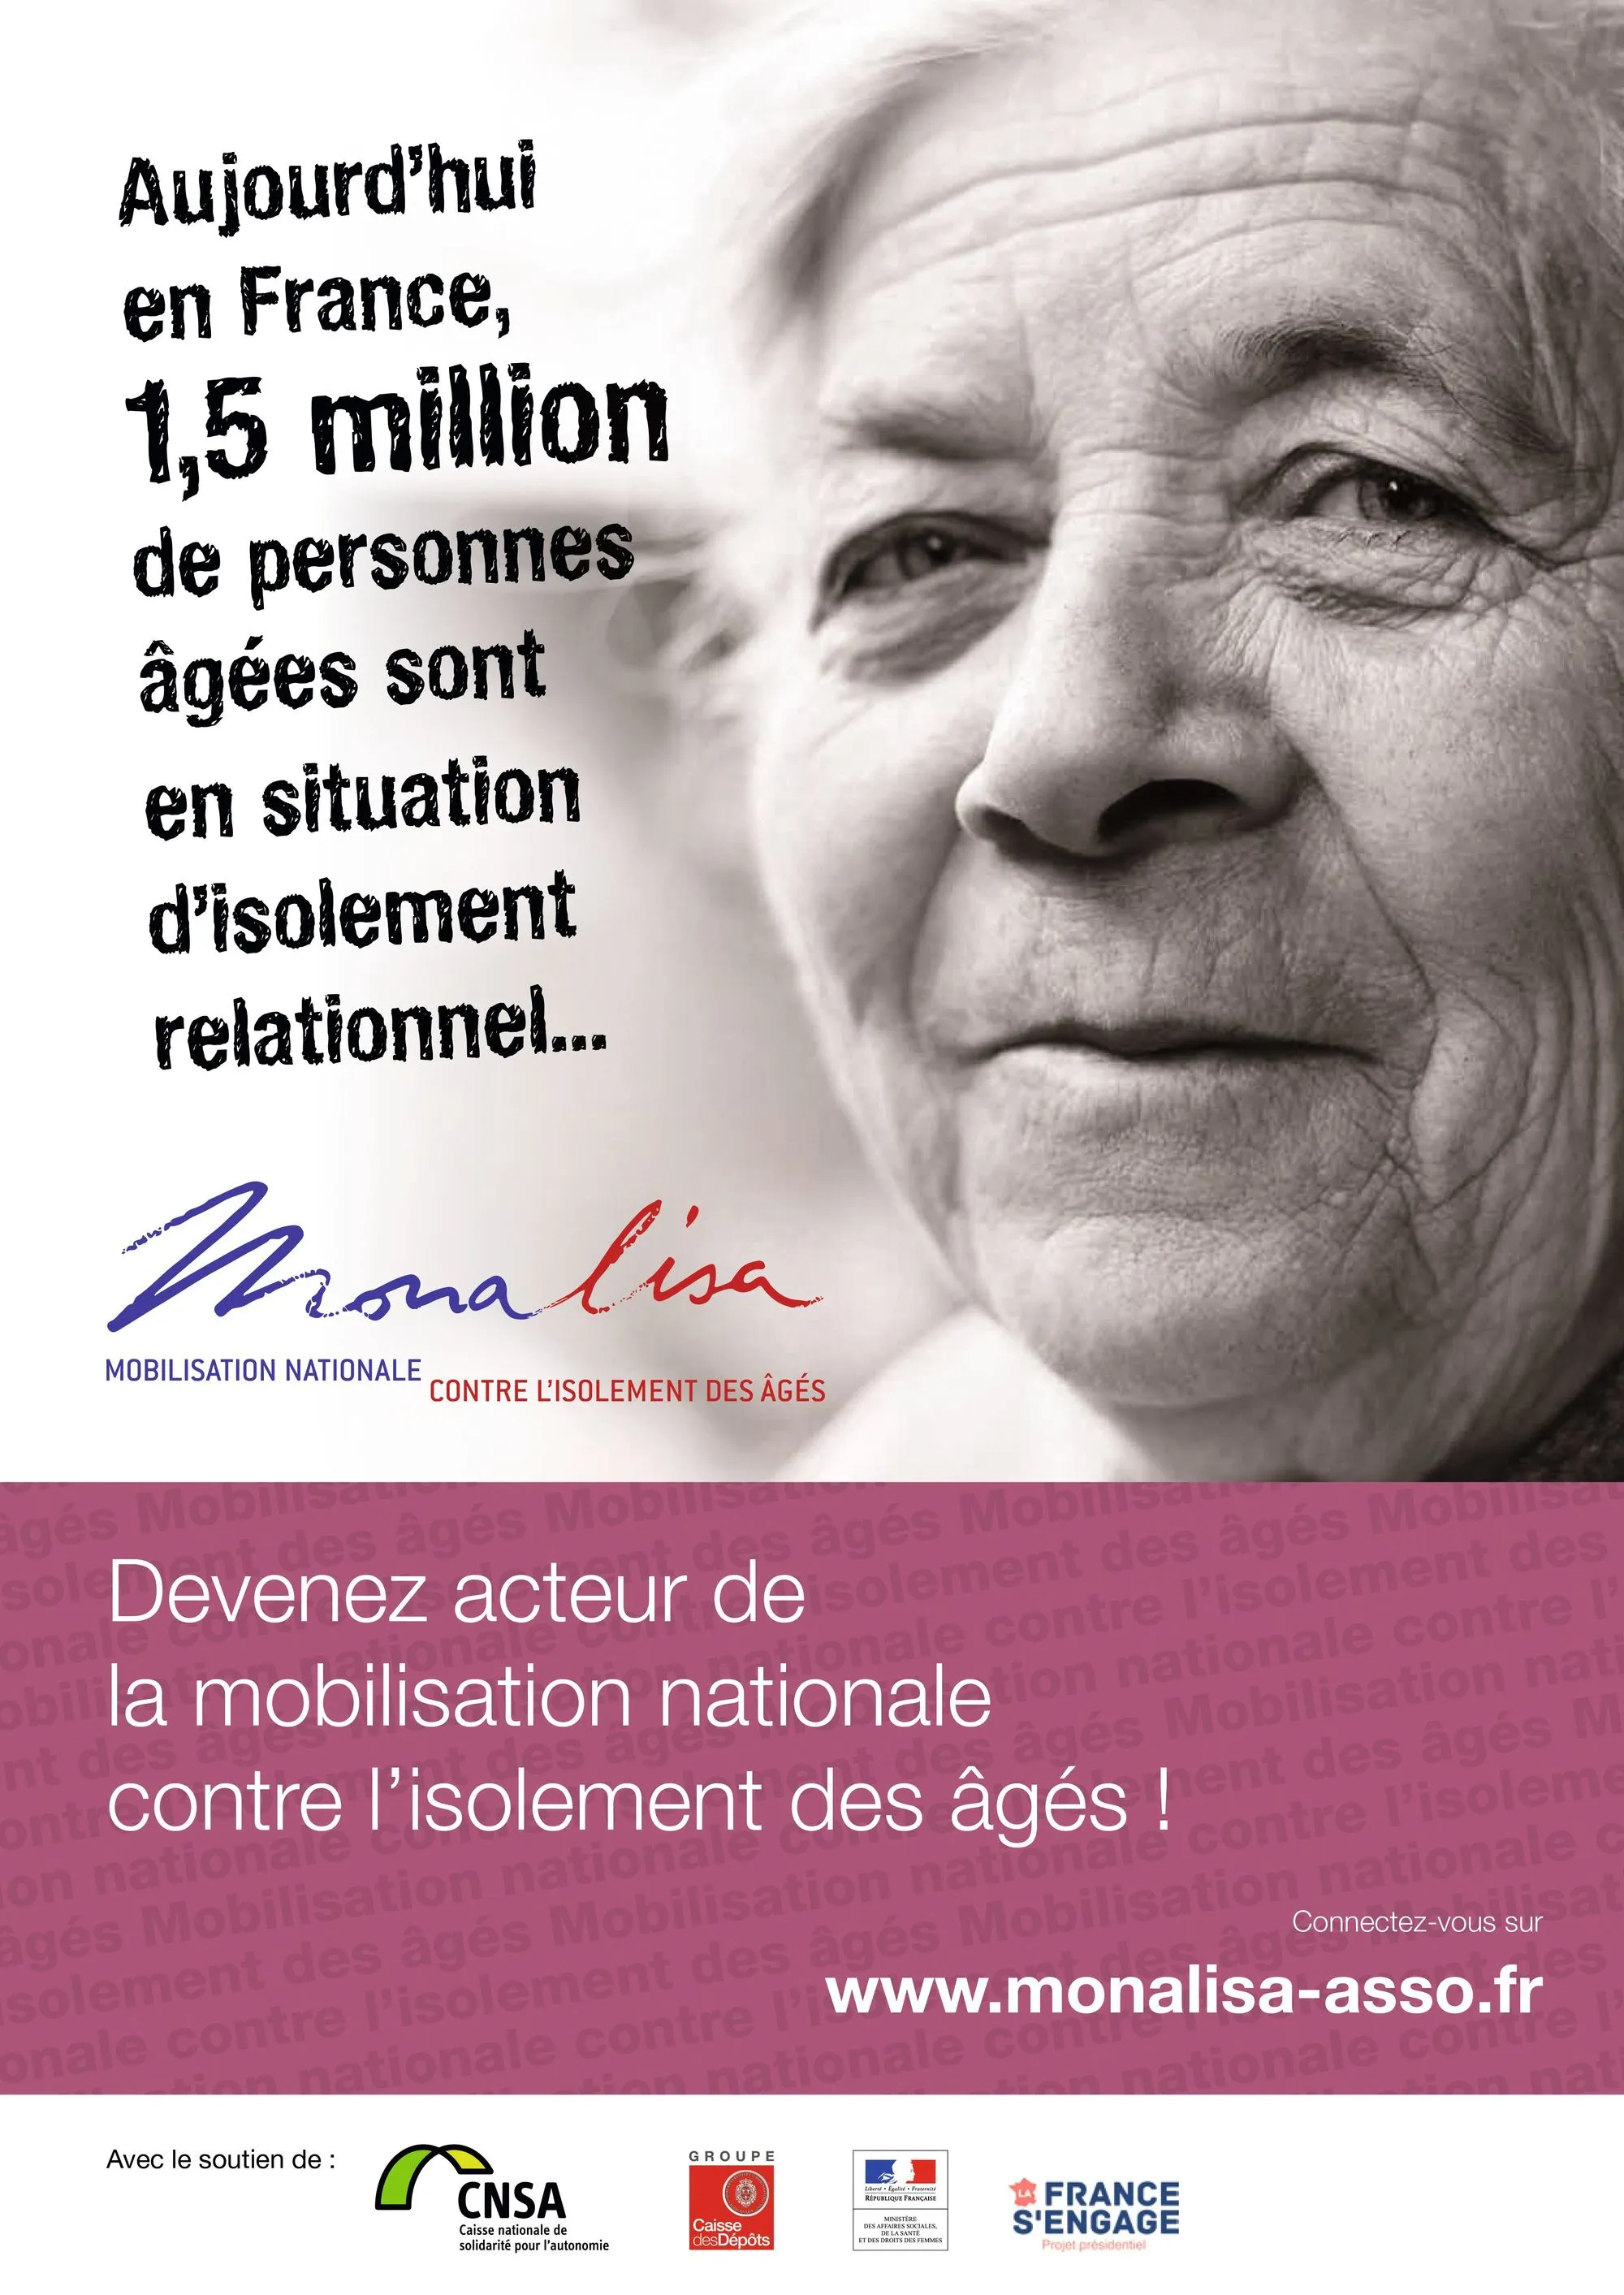 L'association Monalisa agit contre l'isolement des personnes âgées en France.